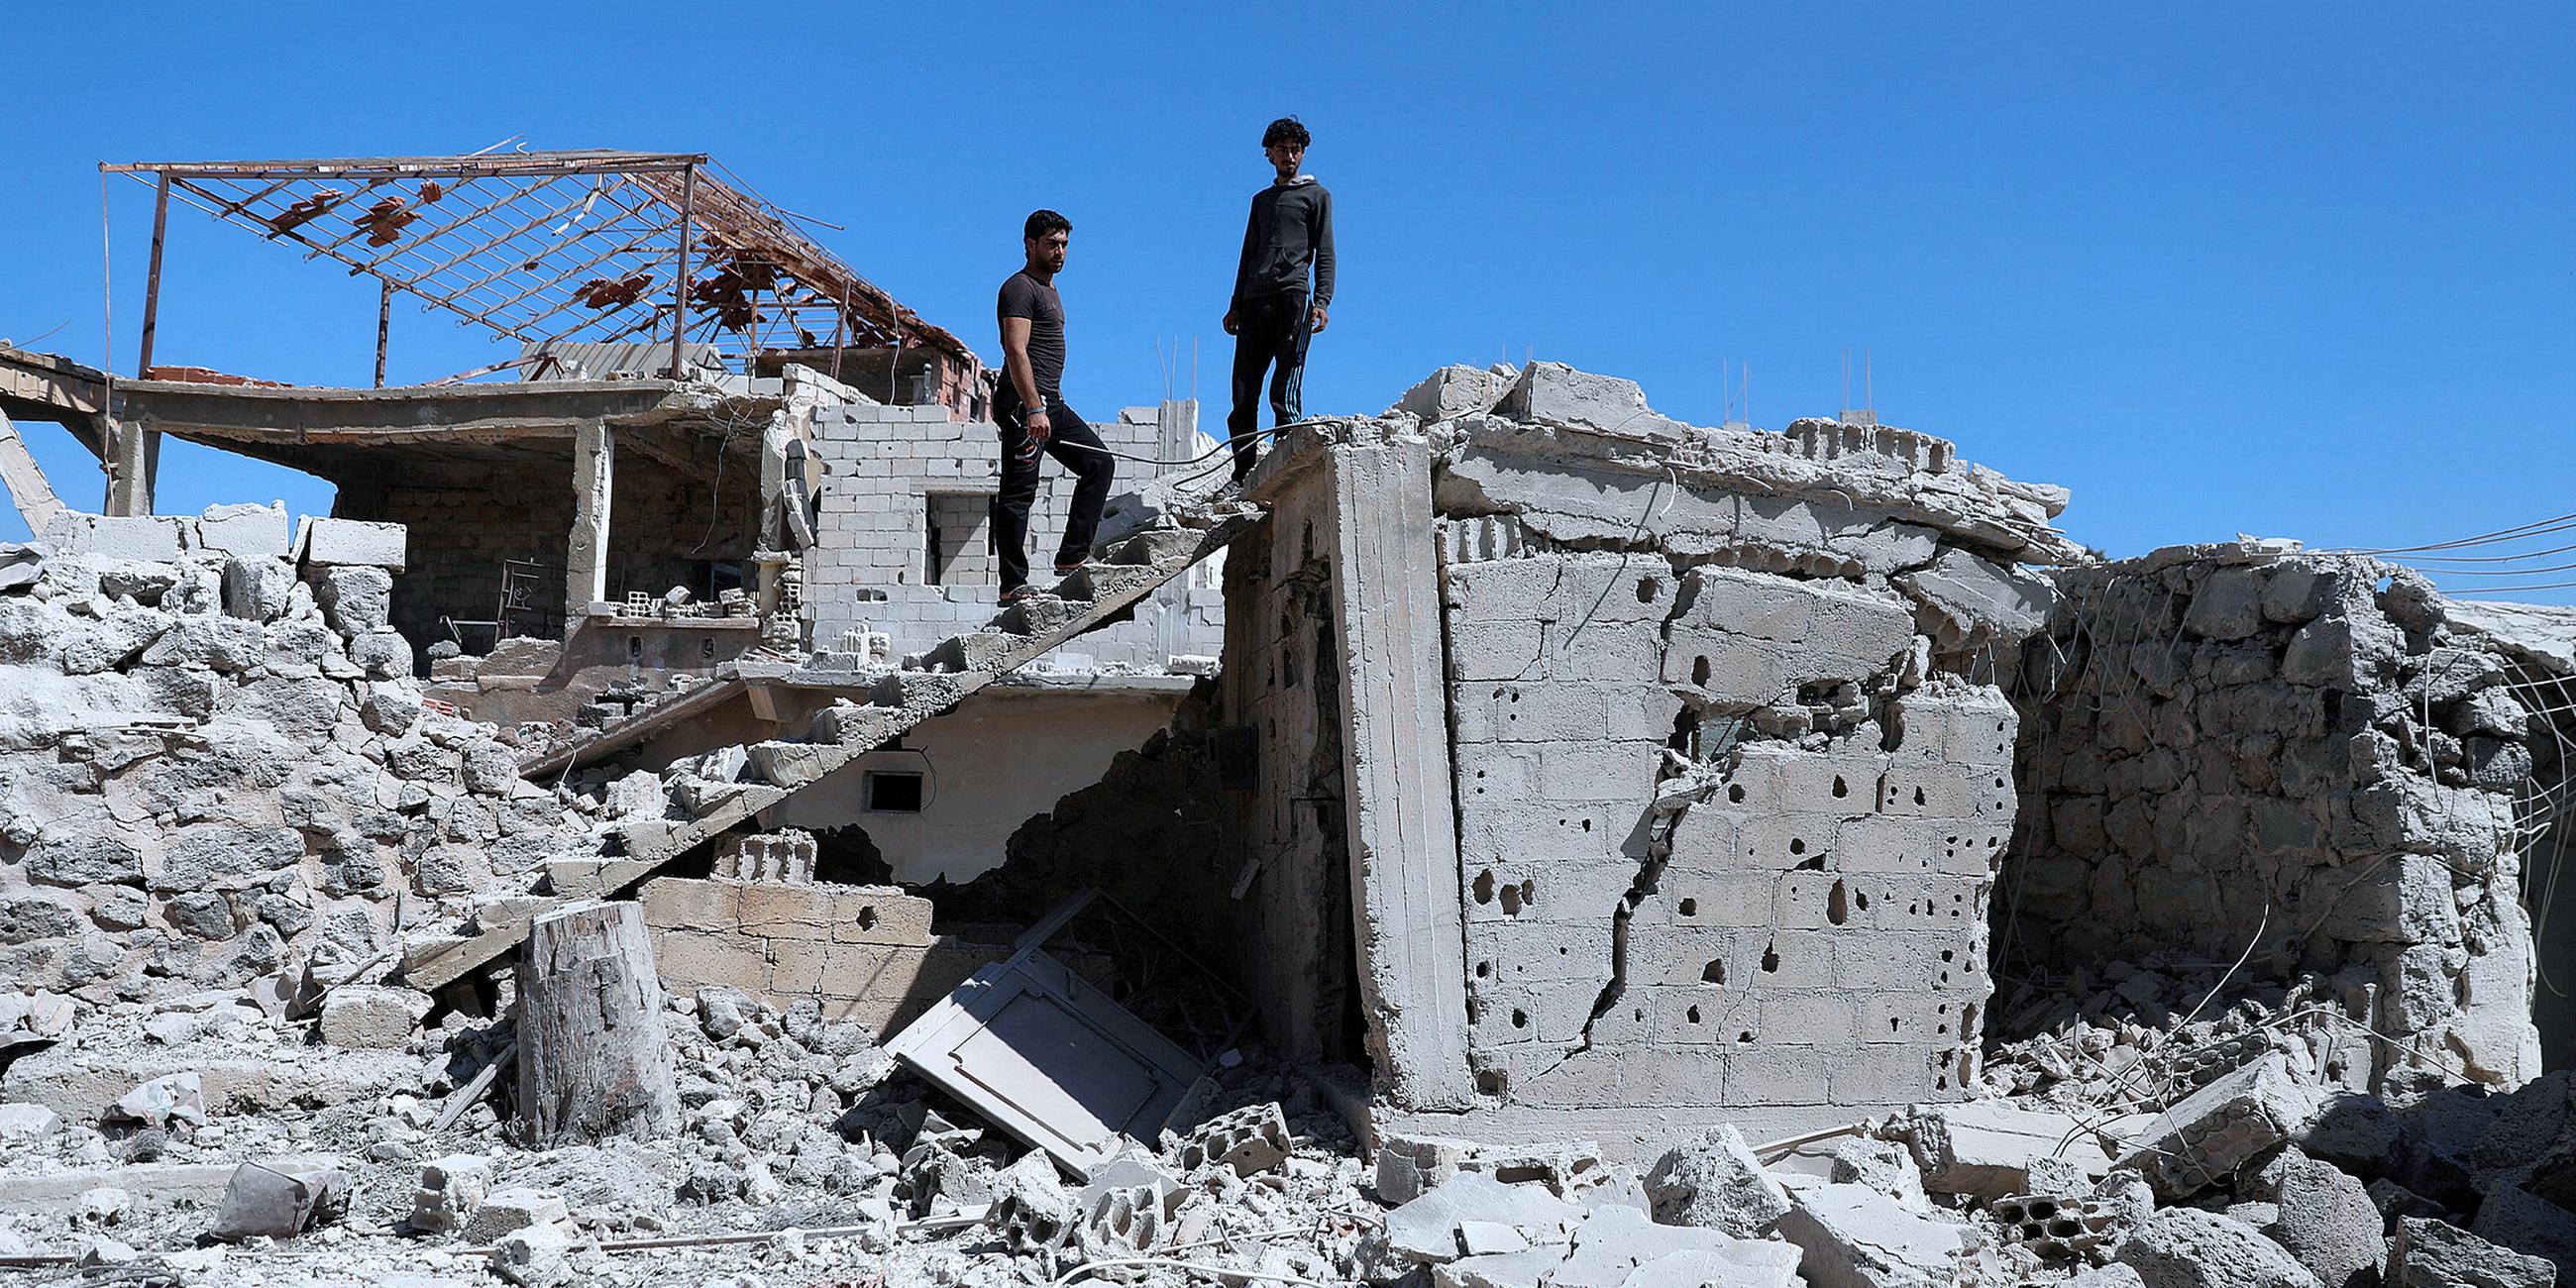 Archiv: Männer inspizieren ein zerstörtes Gebäude in Syrien